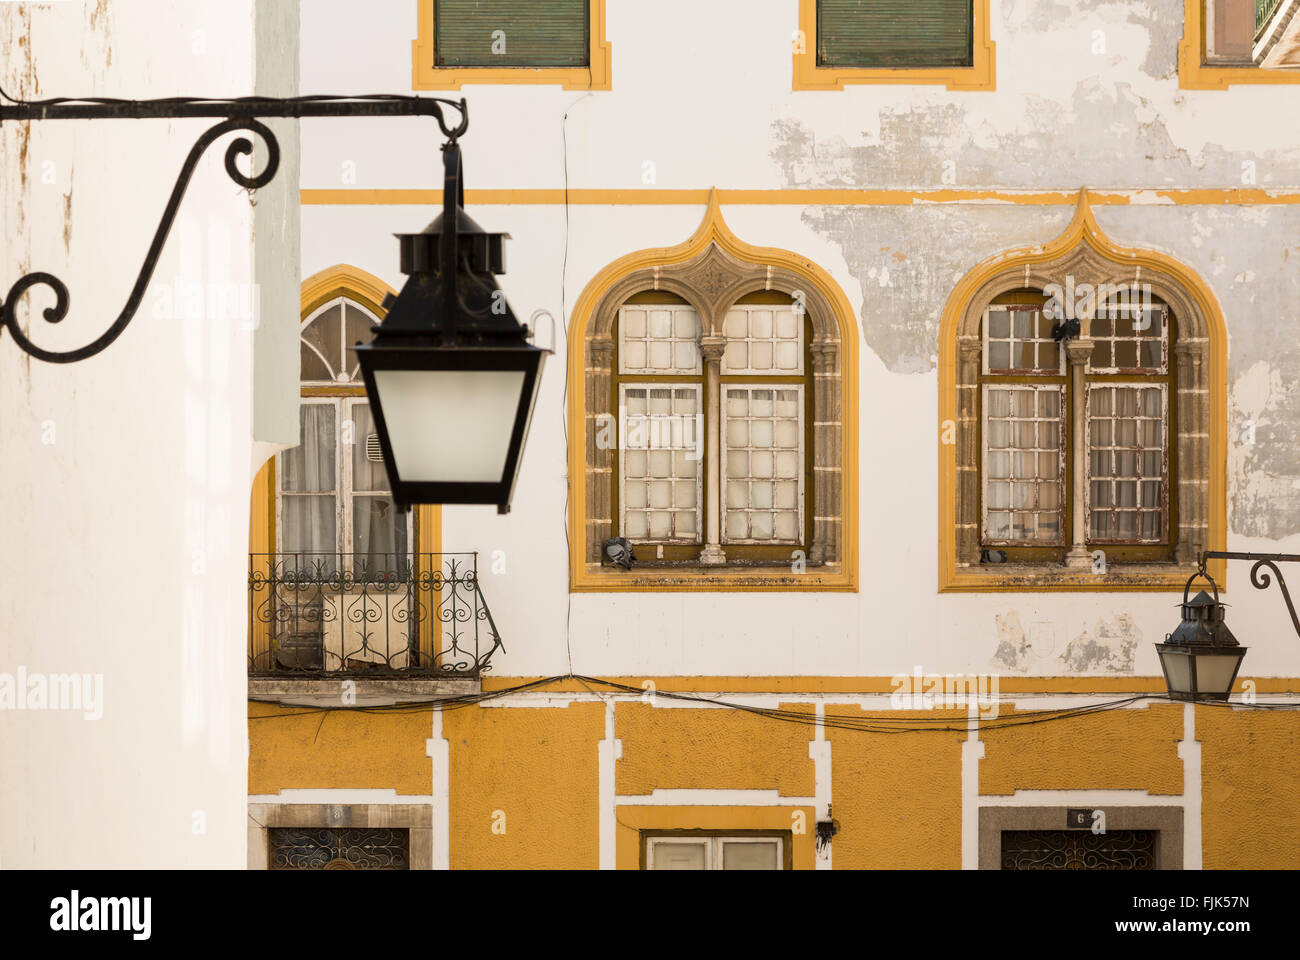 Storico di architettura locale e lampioni, Evora, regione Alentejo, Portogallo. La finestra Dettagli riflettere influenza moresca. Foto Stock